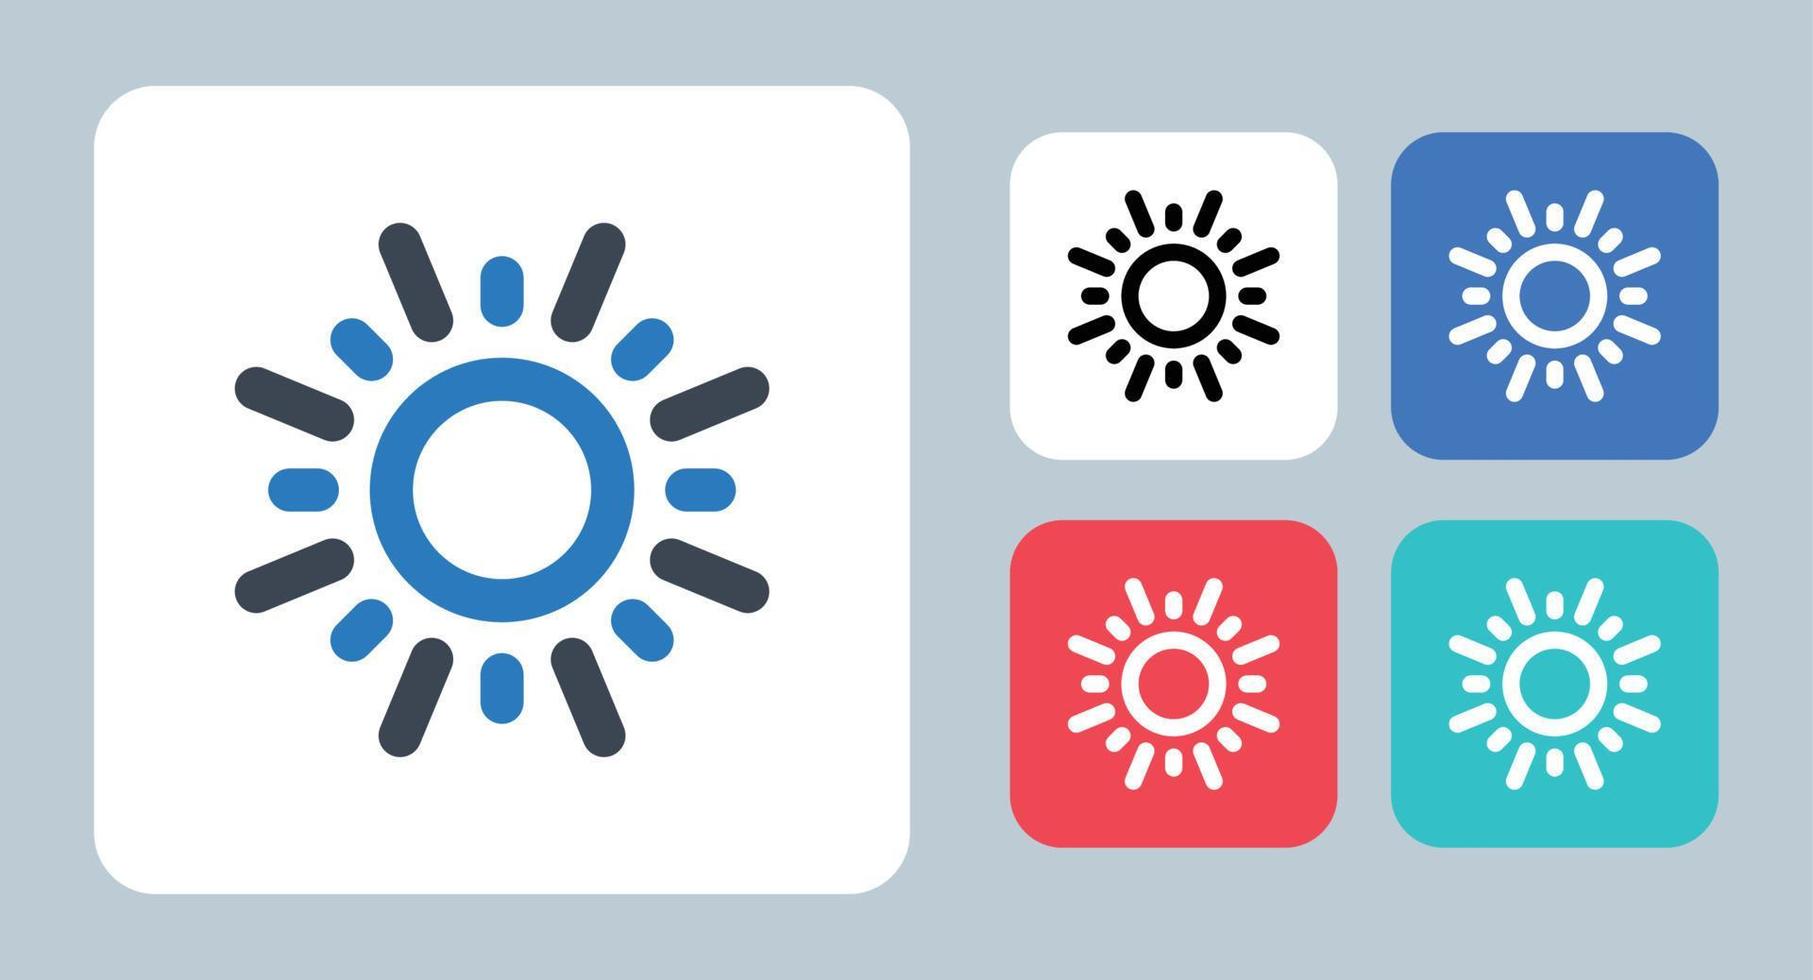 solen ikon - vektor illustration. sol, soligt, dag, väder, varmt, energi, solsken, sommar, prognos, sken, linje, kontur, platt, ikoner.